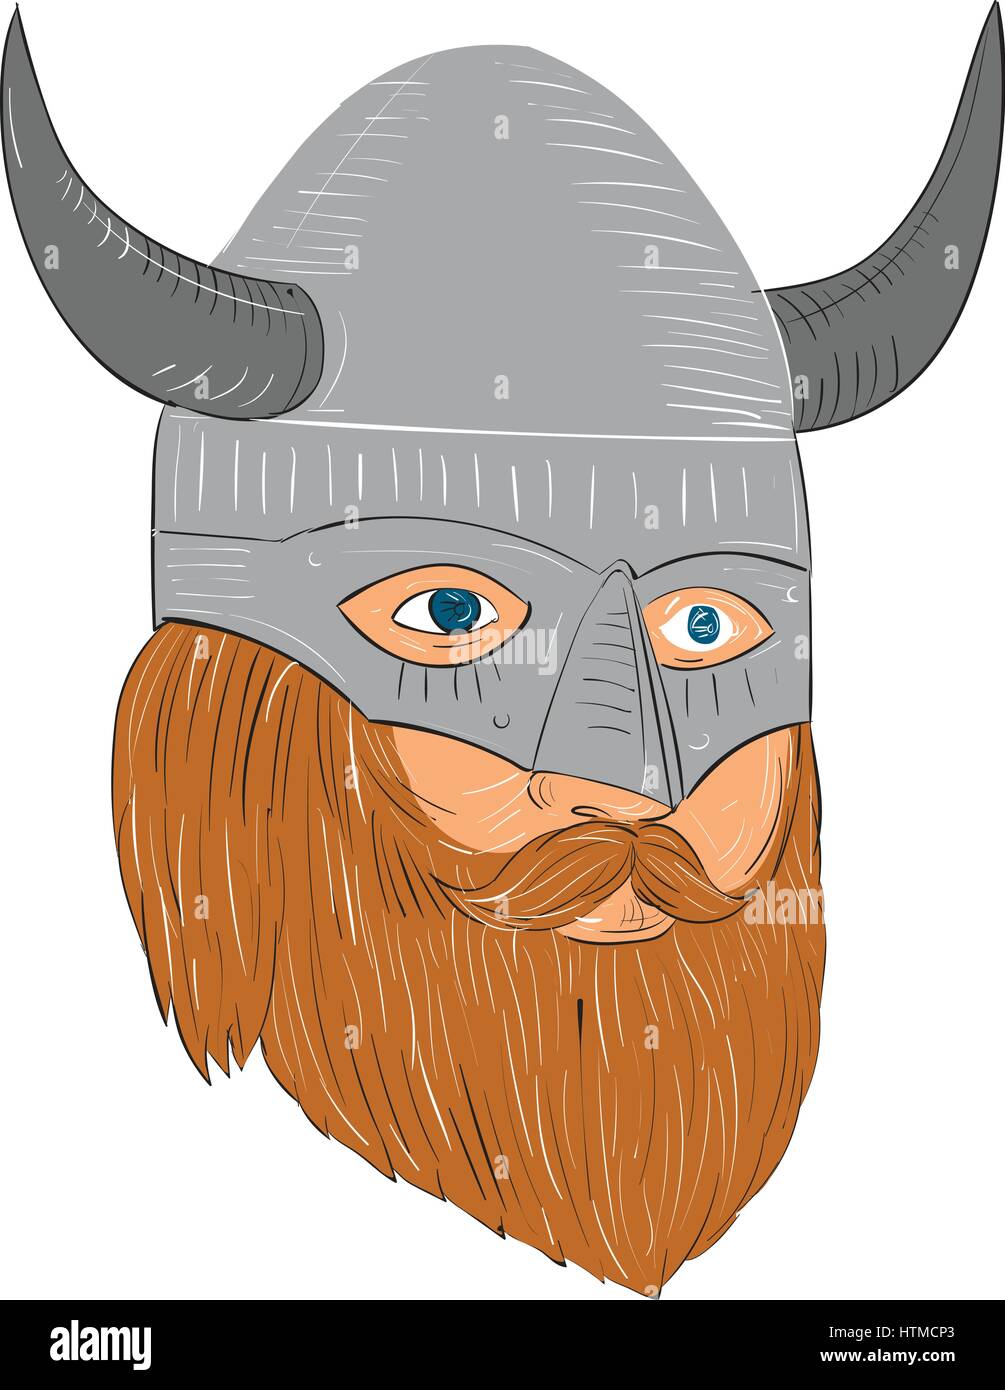 Style croquis dessin illustration d'un norseman guerrier viking raider chef barbare avec le port du casque à cornes barbe légèrement sur le côté set Illustration de Vecteur